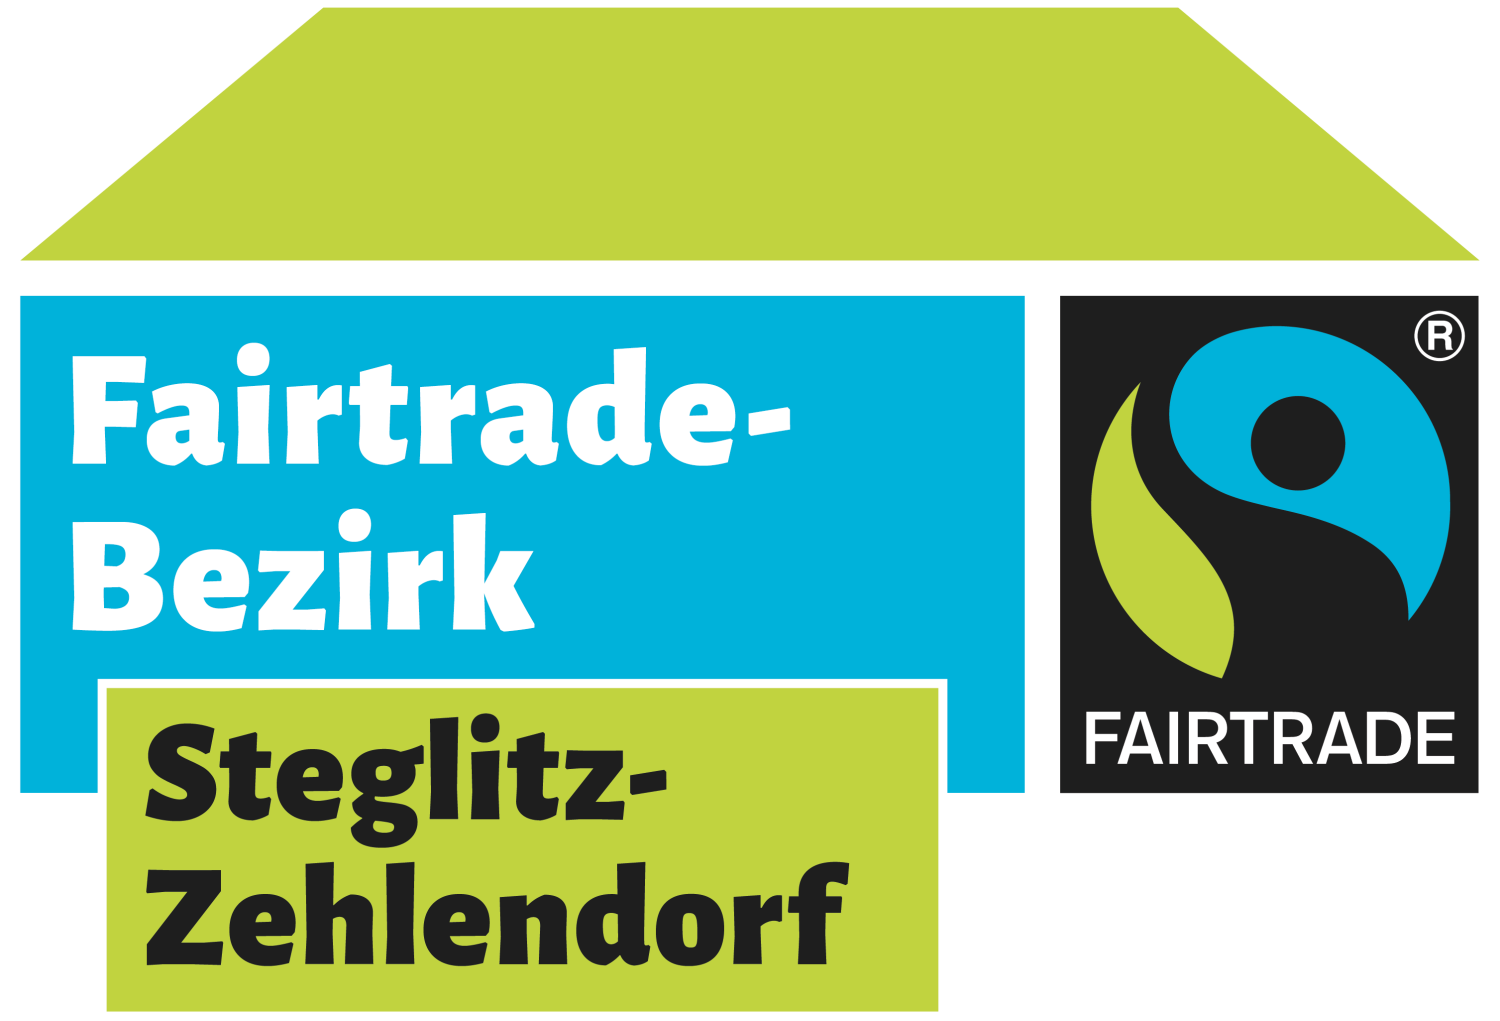 Weitere Informationen zum Fairtrade-Bezirk Steglitz Zehlendorf